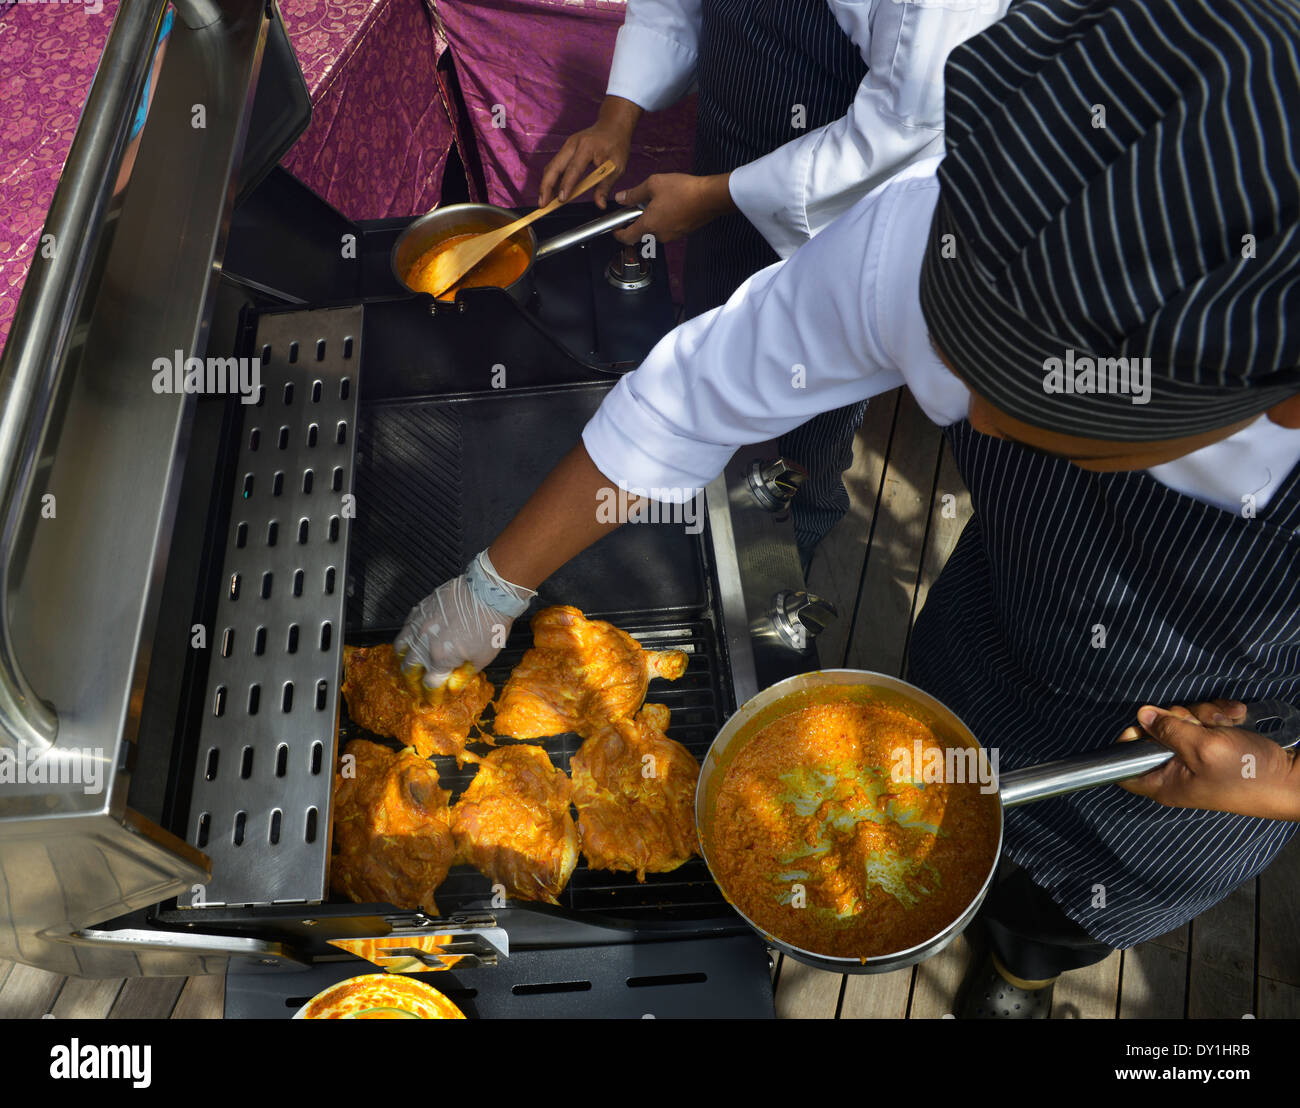 La cuisson des aliments asiatiques, Malaisie Banque D'Images